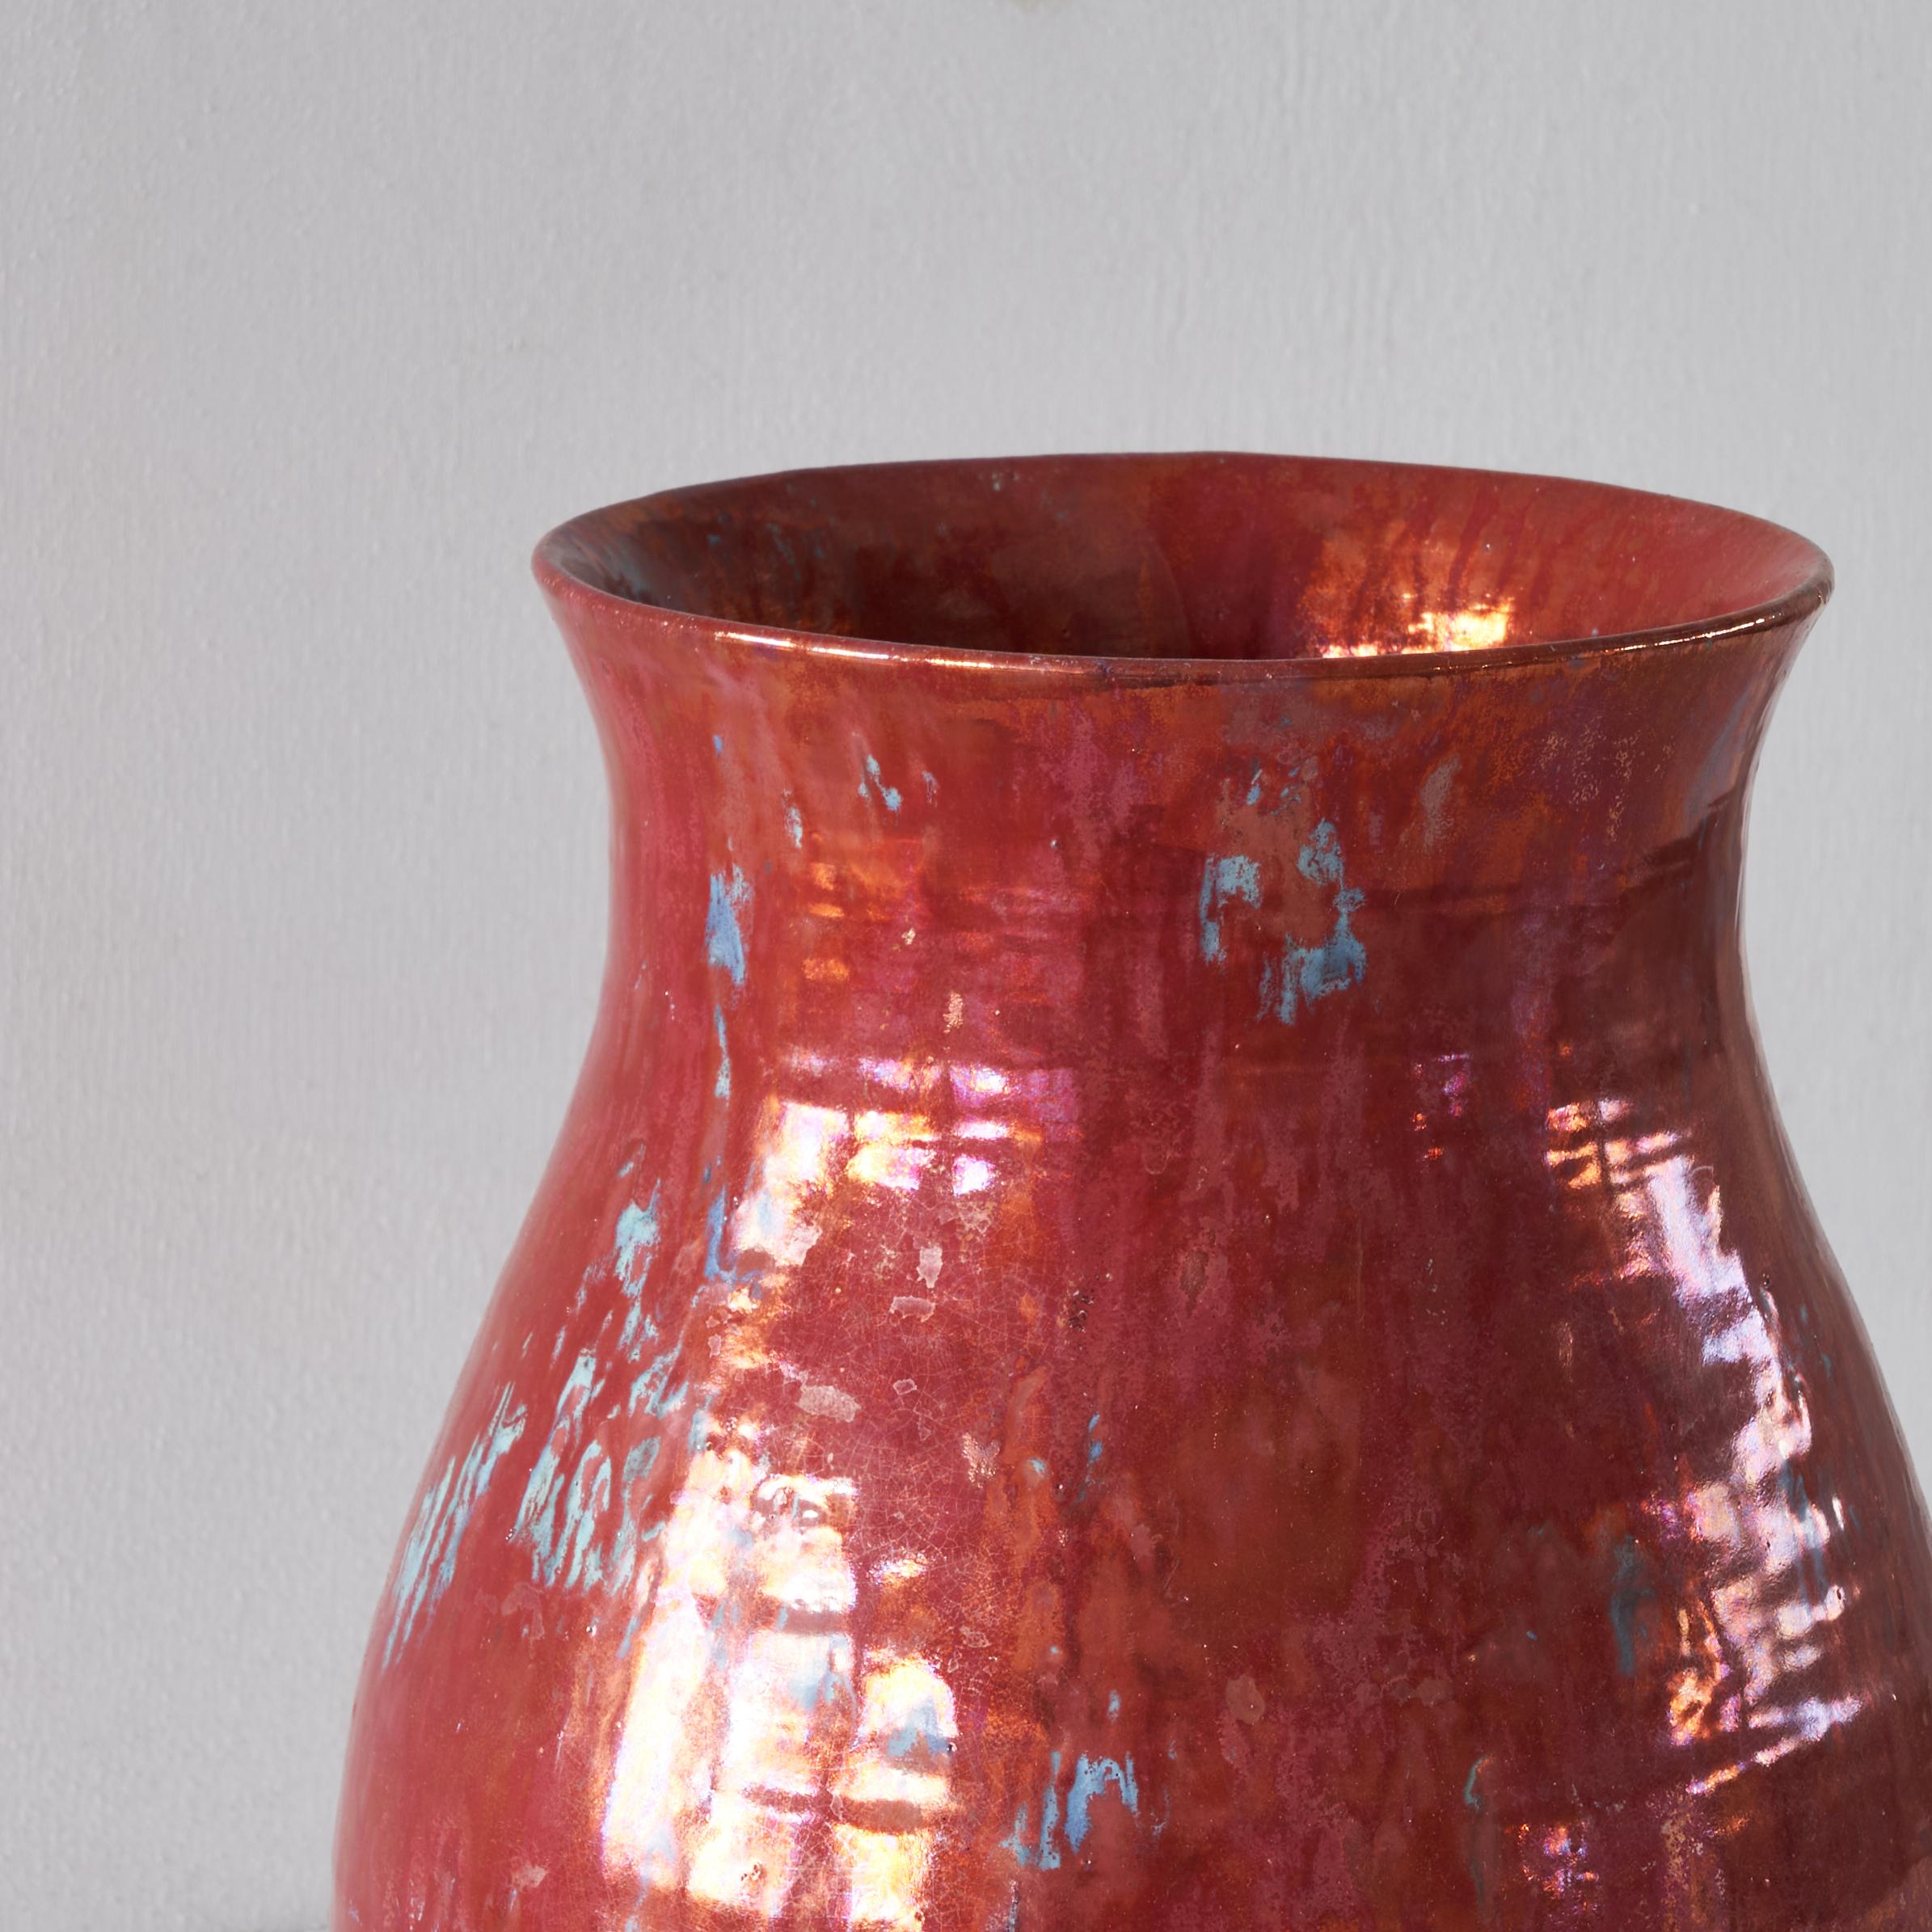 Other Large Dutch Delft Metallic Red Glazed Vase by De Porceleyne Fles 1900 For Sale